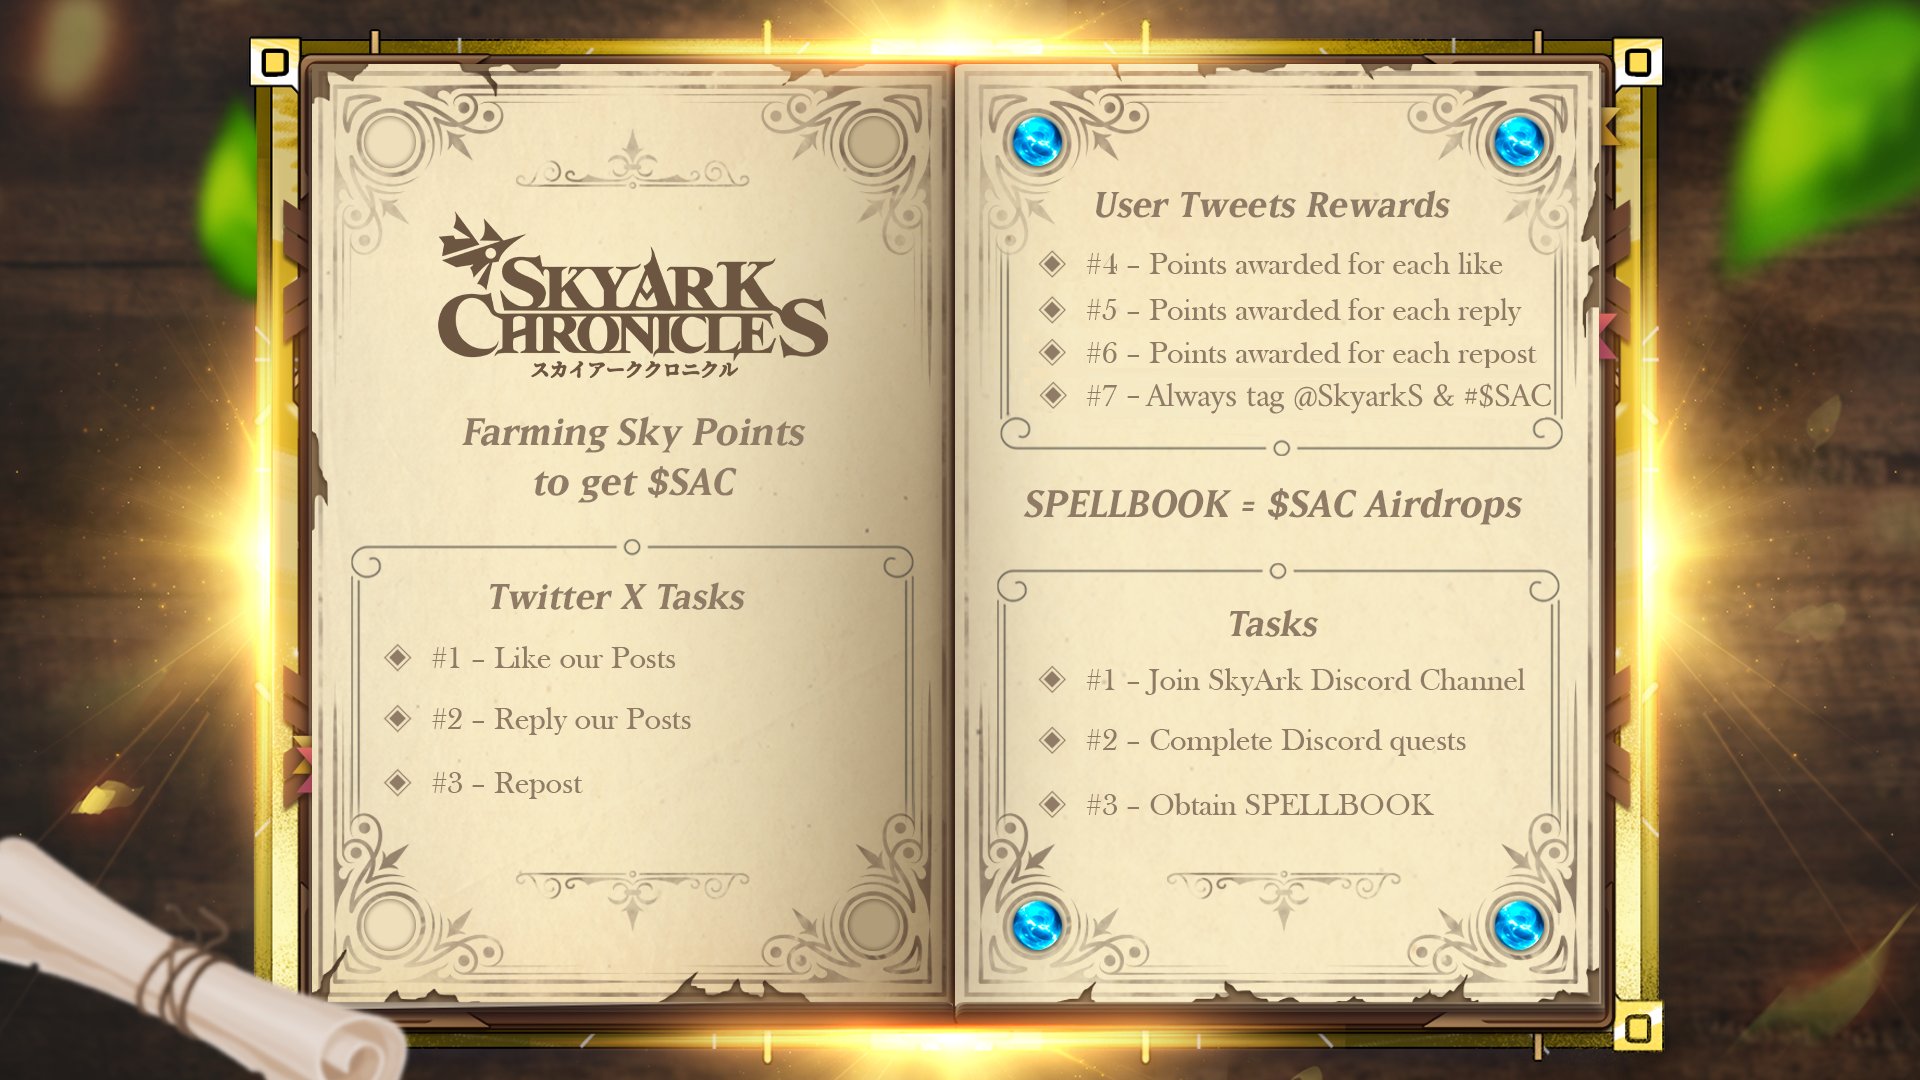 SkyArk Chronicles Twitter